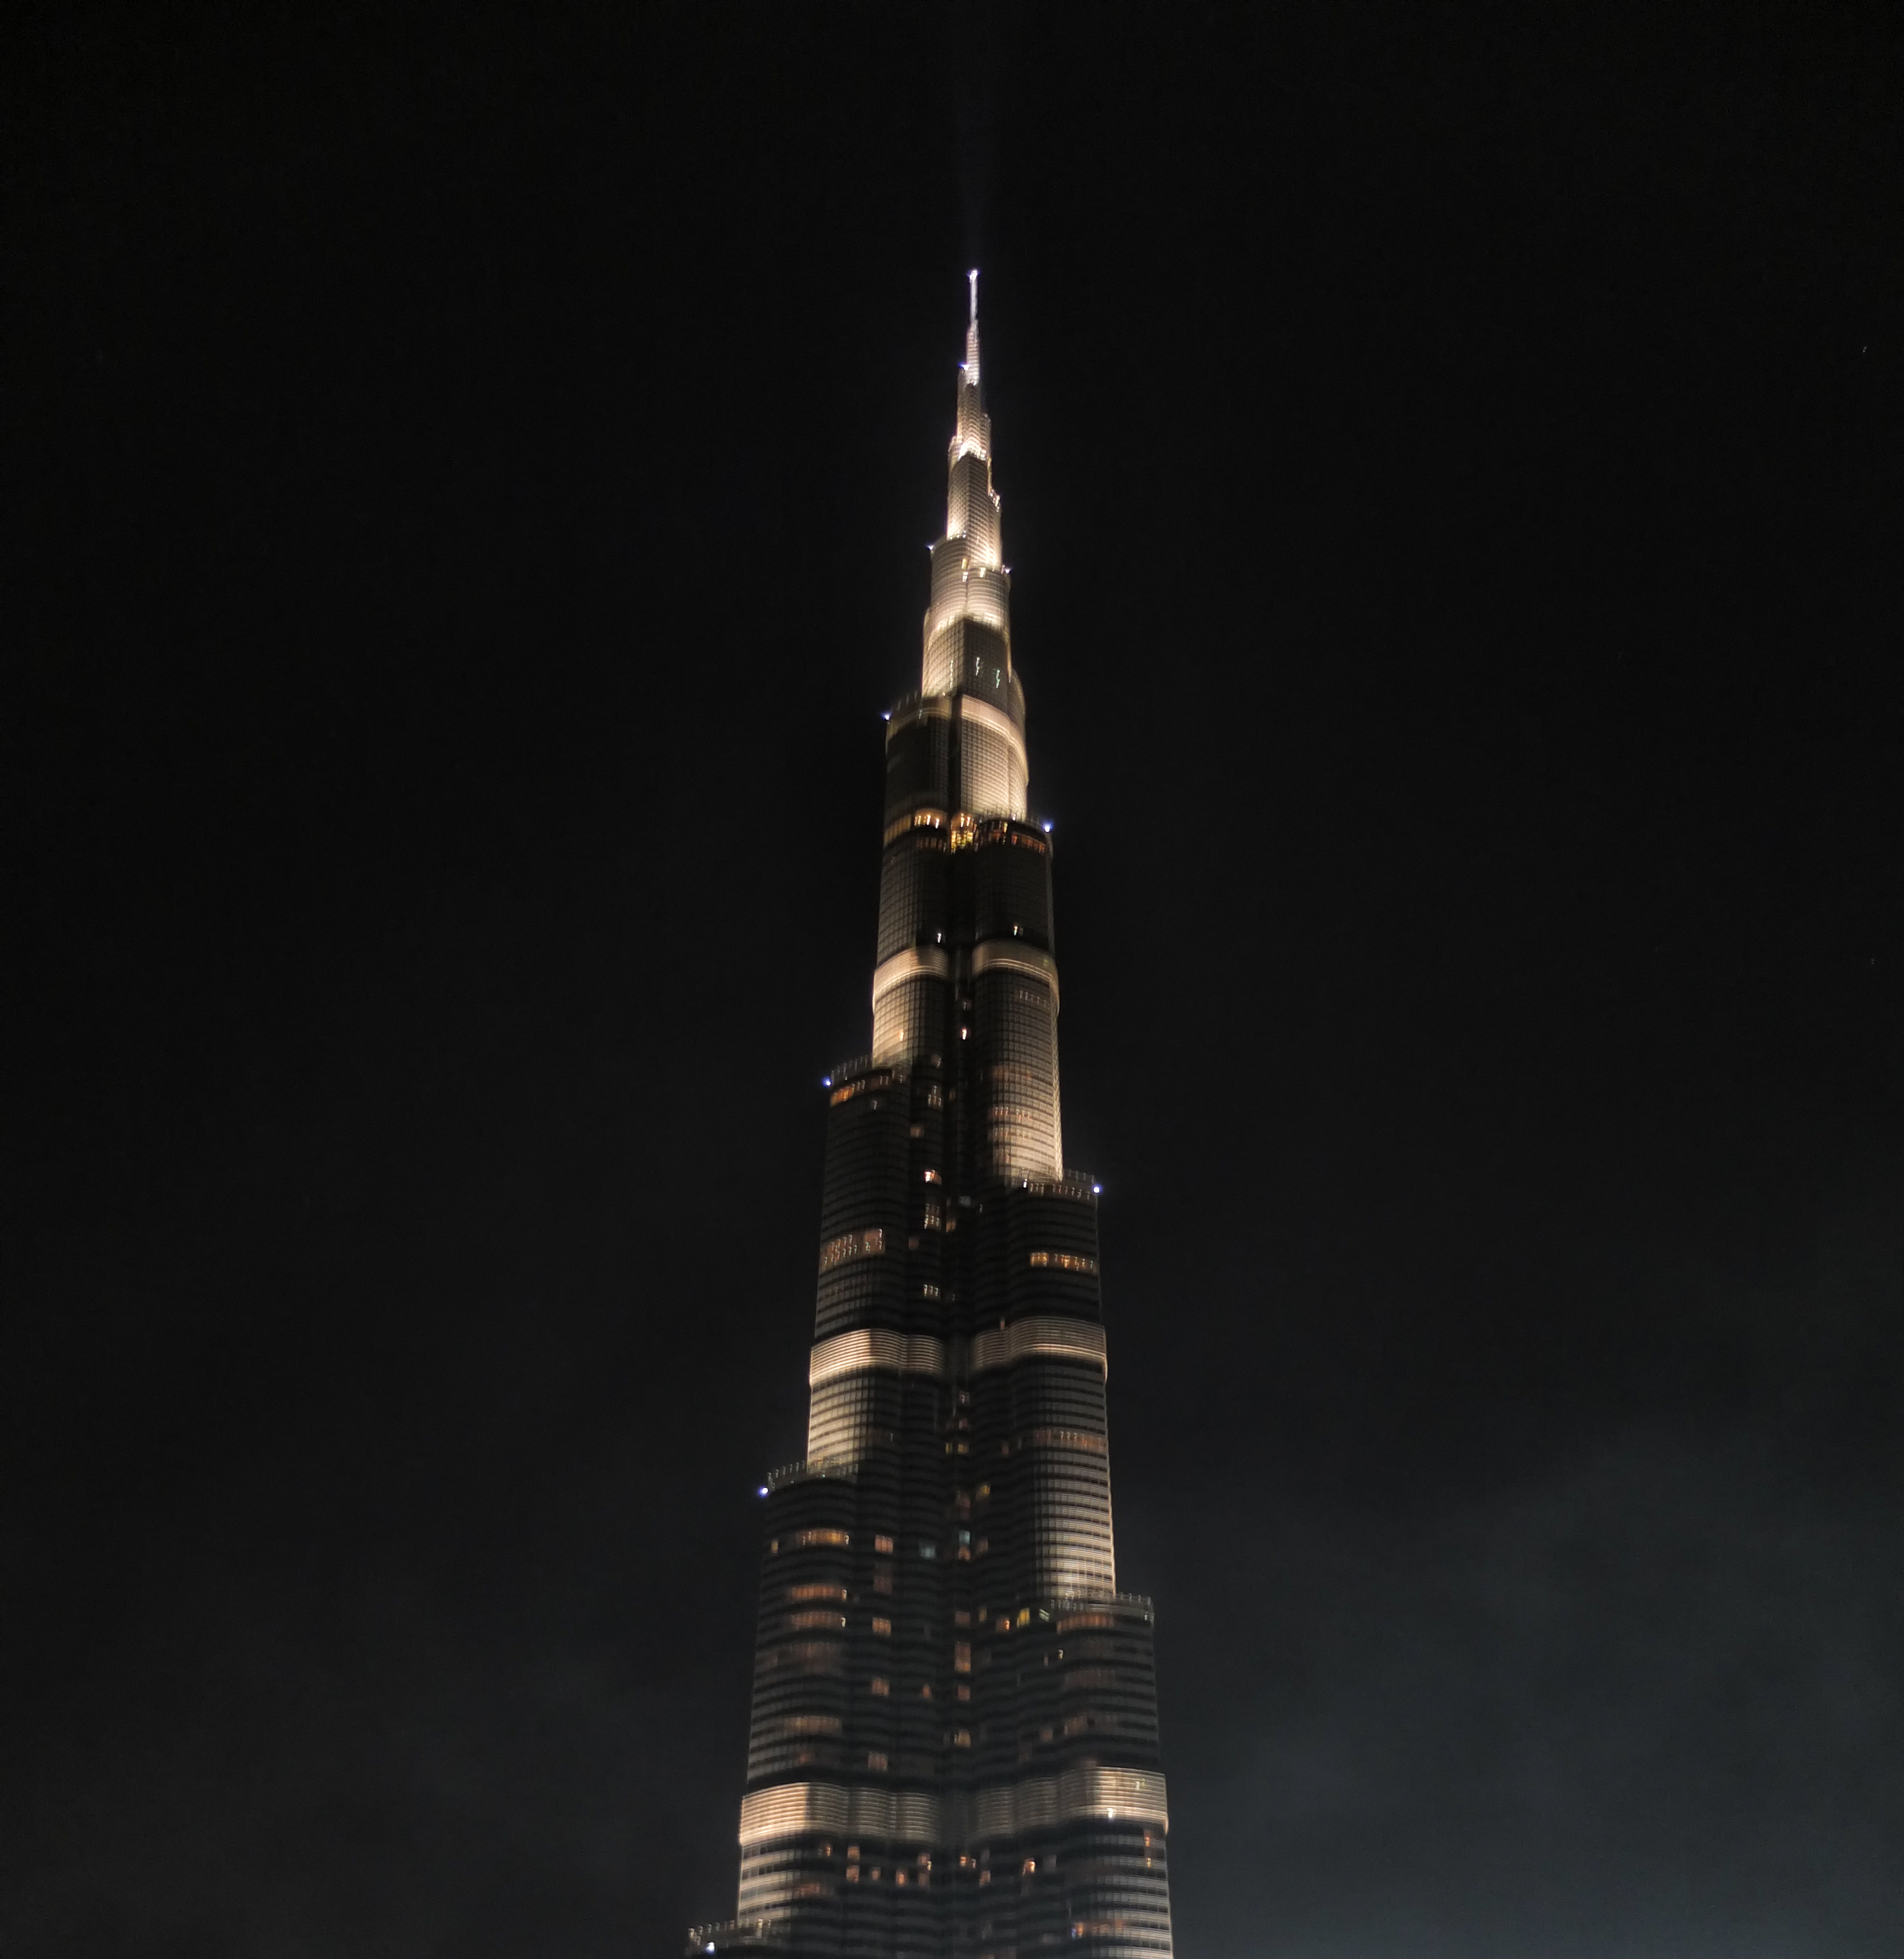 The Burj Khalifa at night